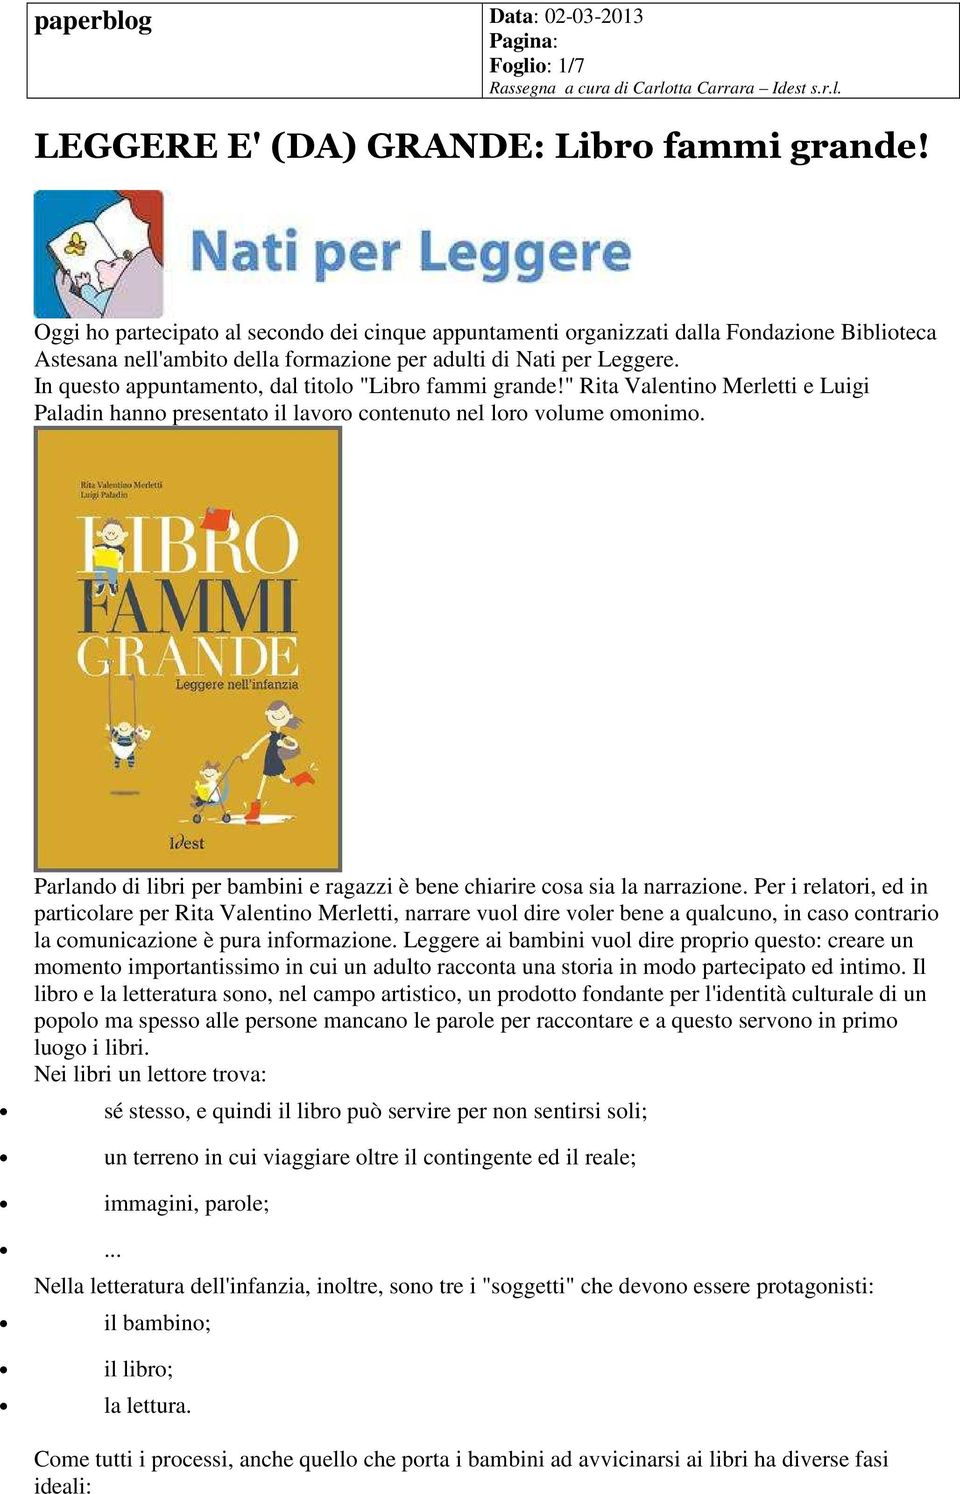 In questo appuntamento, dal titolo "Libro fammi grande!" Rita Valentino Merletti e Luigi Paladin hanno presentato il lavoro contenuto nel loro volume omonimo.